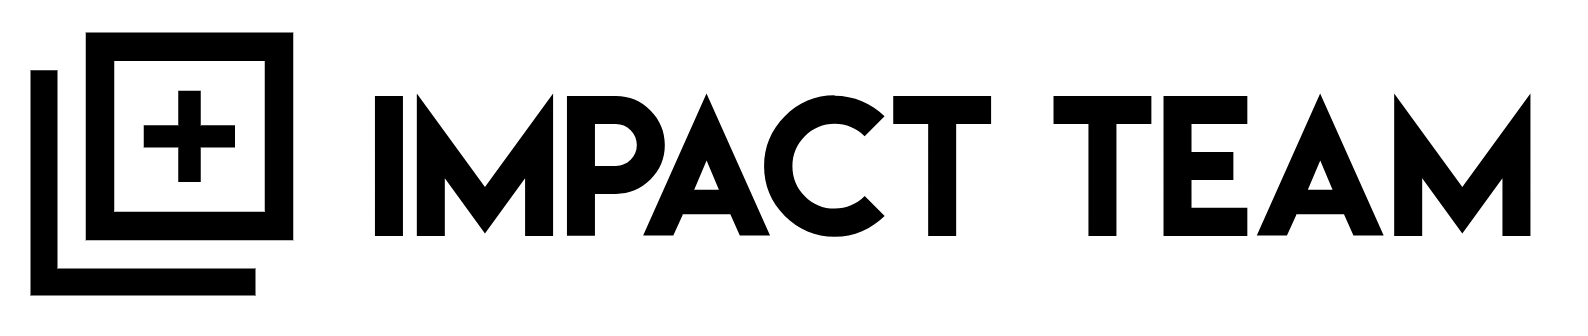 Impact Team Consulting